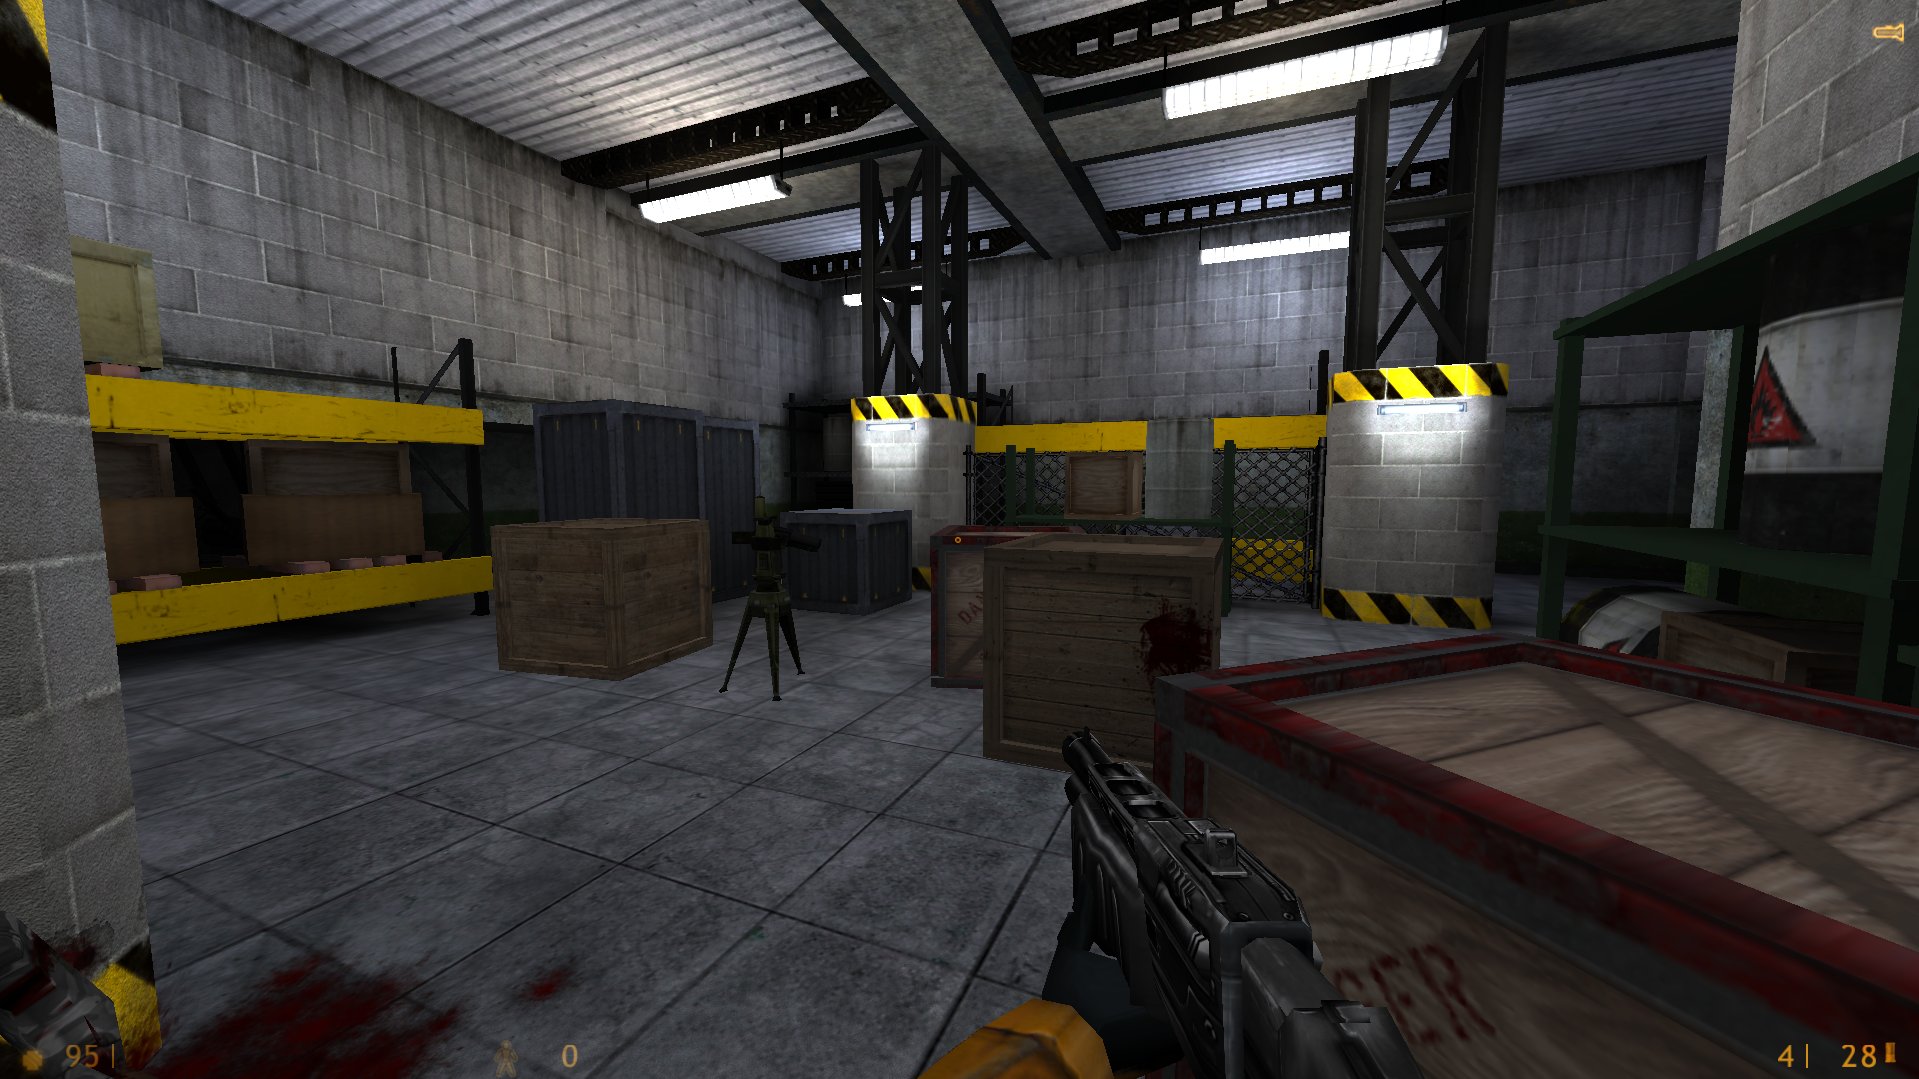 Black Mesa mod for Half-Life 2 - ModDB